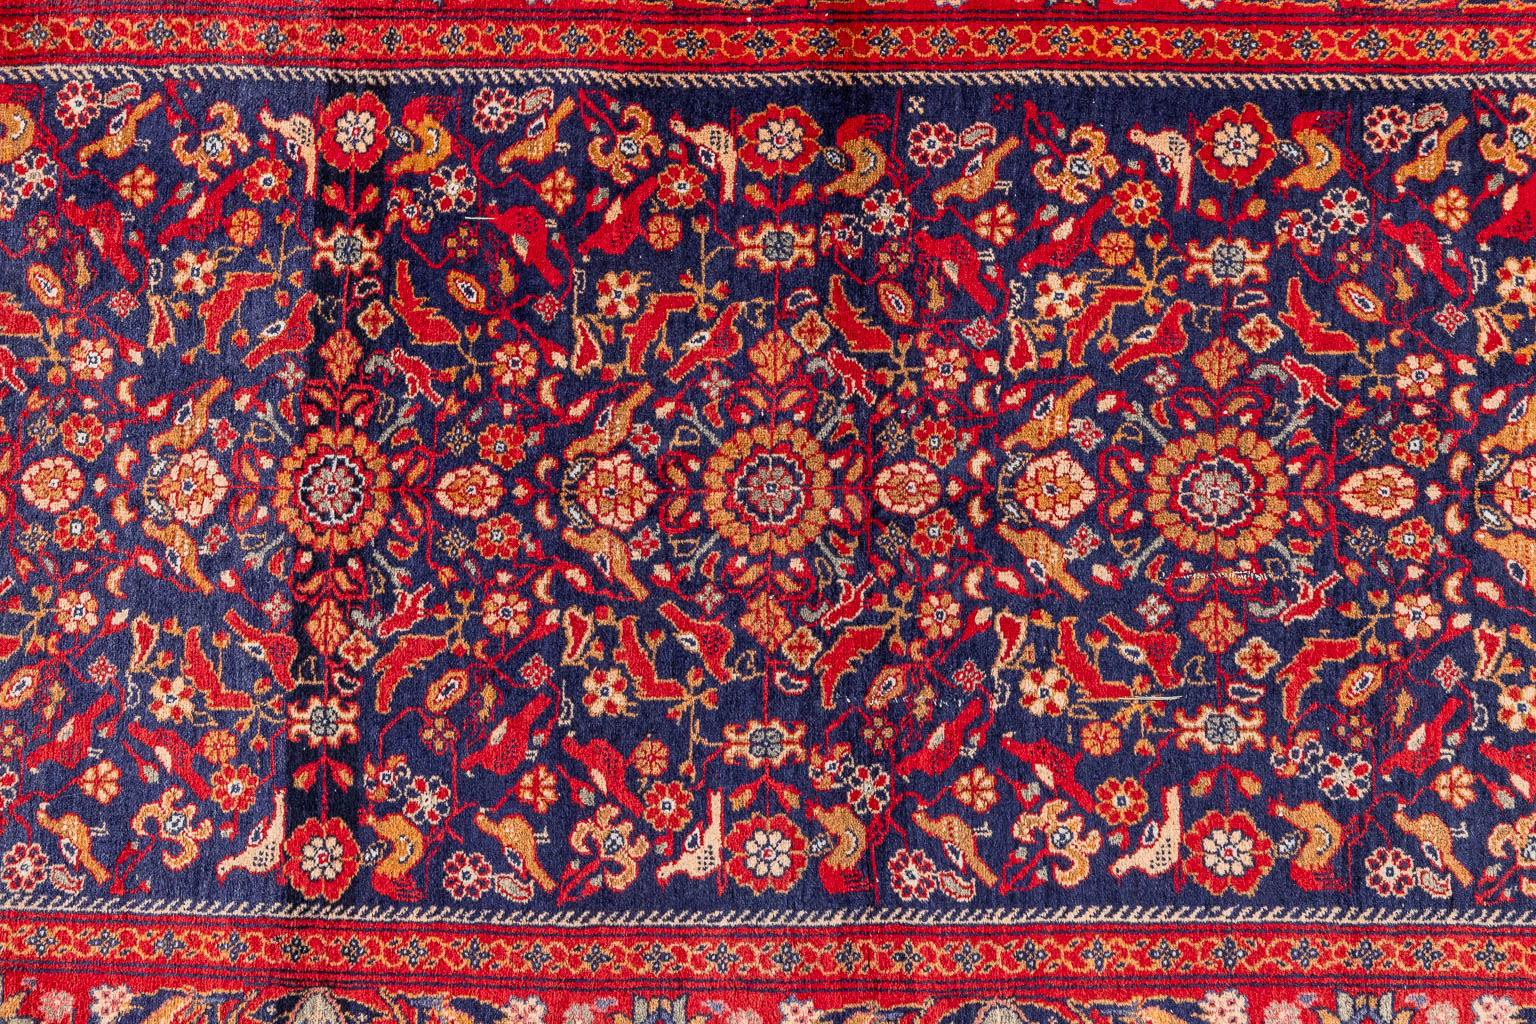 An Oriental hand-made carpet, Kashan. (D:186 x W:100 cm)